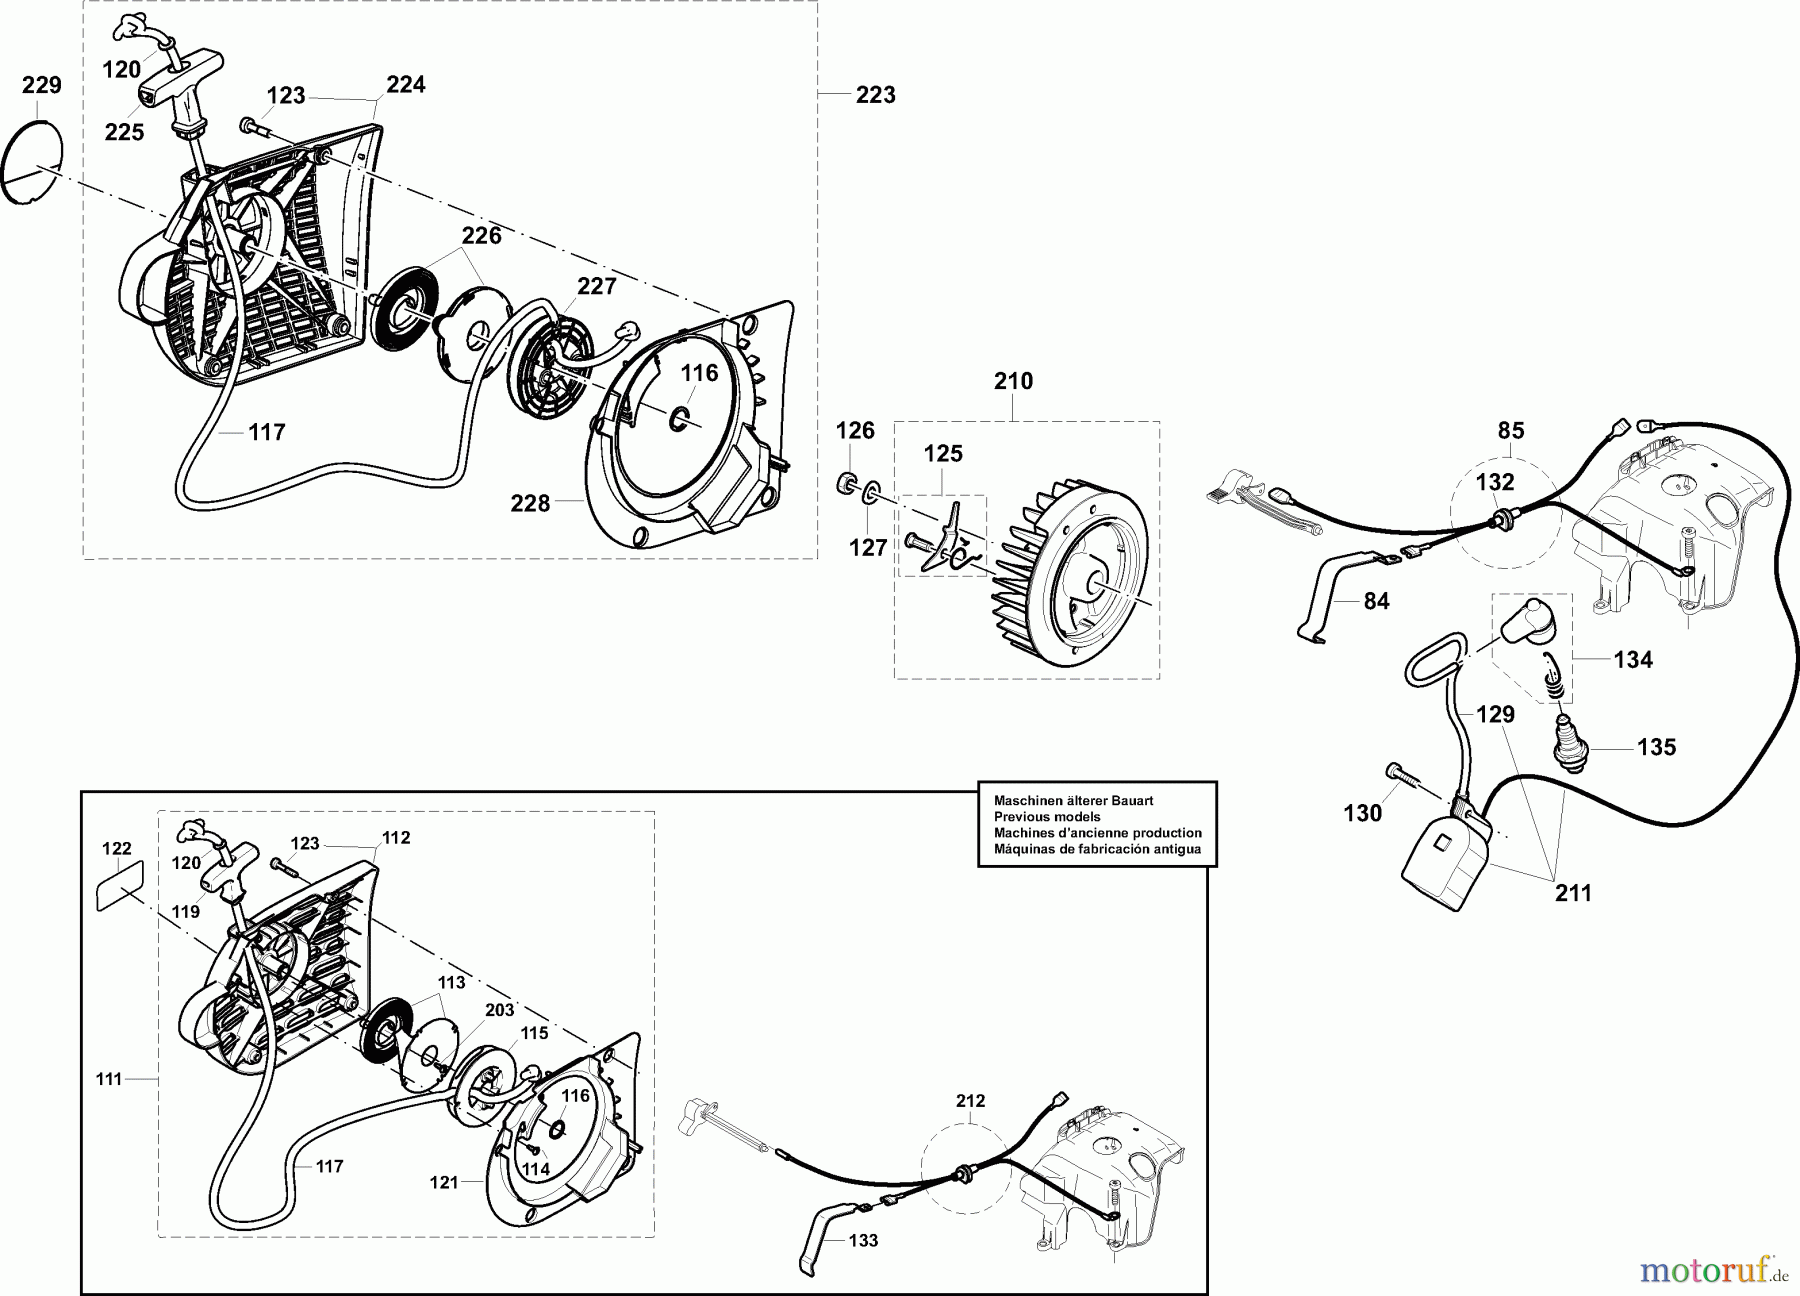  Dolmar Trennschleifer Benzin PC-6530 (USA) 5  Anwerfvorrichtung, Magnetzünder